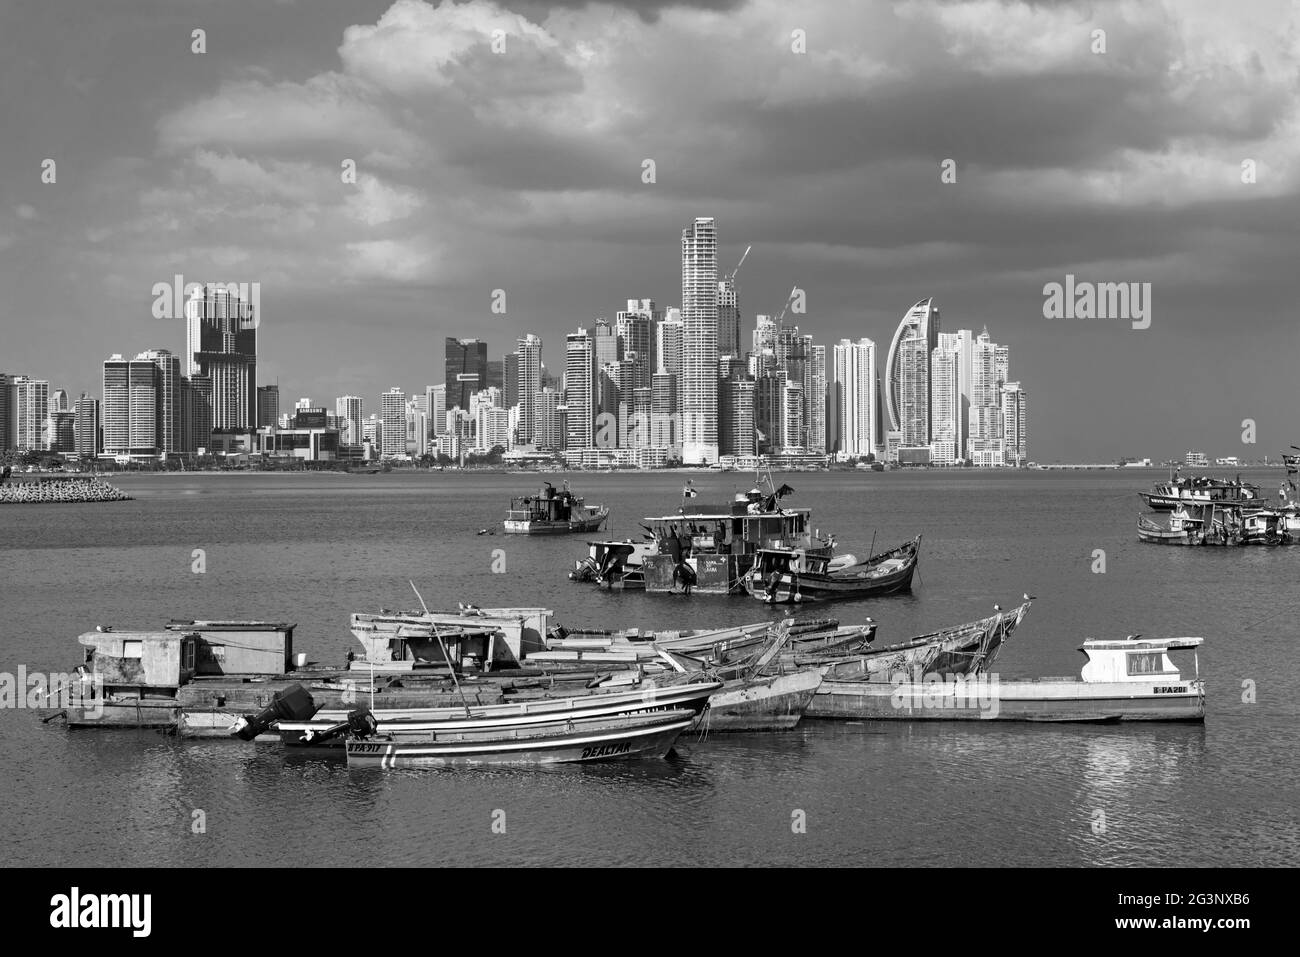 Viejos barcos de pesca de madera frente al horizonte de la ciudad de panamá en blanco y negro Foto de stock